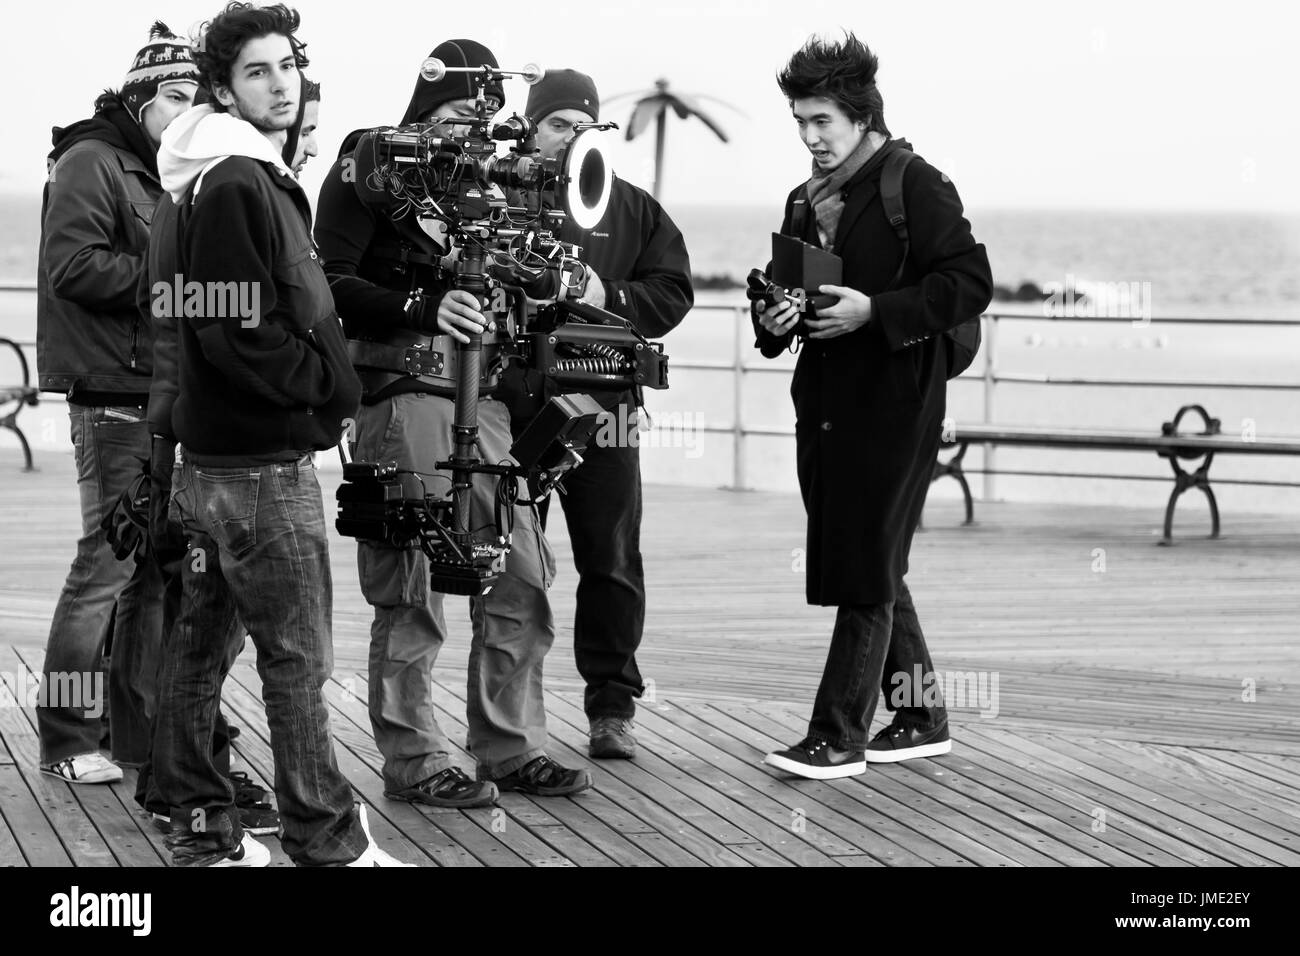 La CIUDAD DE NUEVA YORK-NOV 2010: Un equipo de filmación trabaja en ubicación en el paseo marítimo de Coney Island. Imagen en blanco y negro. Foto de stock